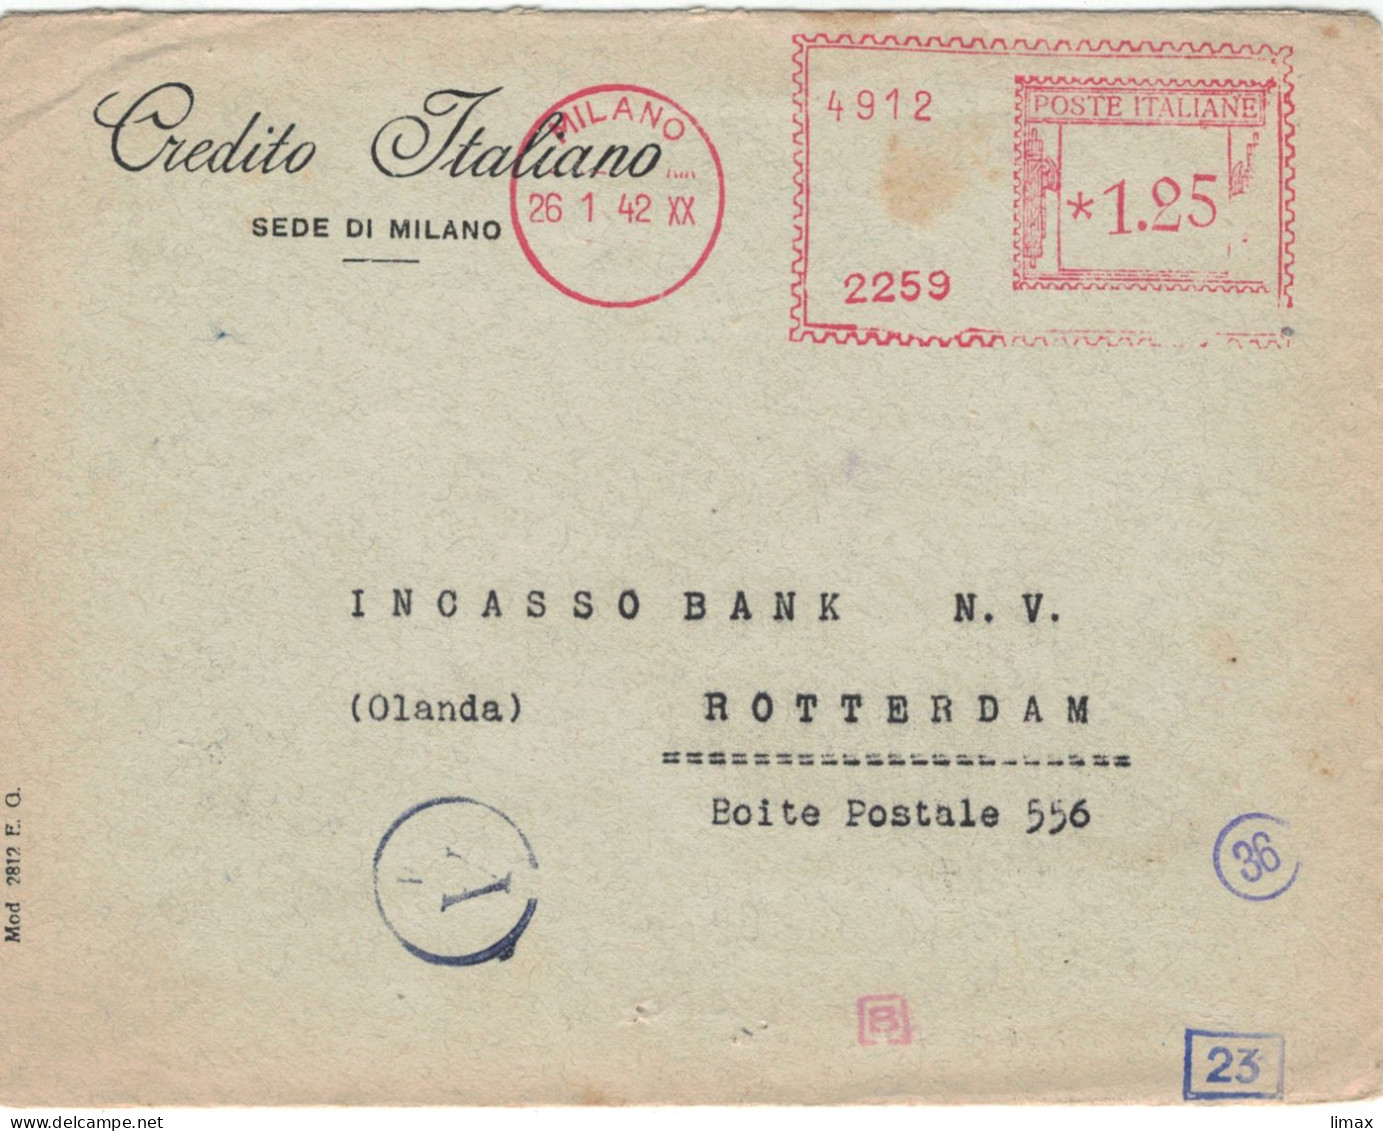 Credito Italiano Milano 1942 > Incasso Bank Rotterdam - Zensur Ad - Verificato Per Censura Posta Estera - XX Mussolini Z - Maschinenstempel (EMA)